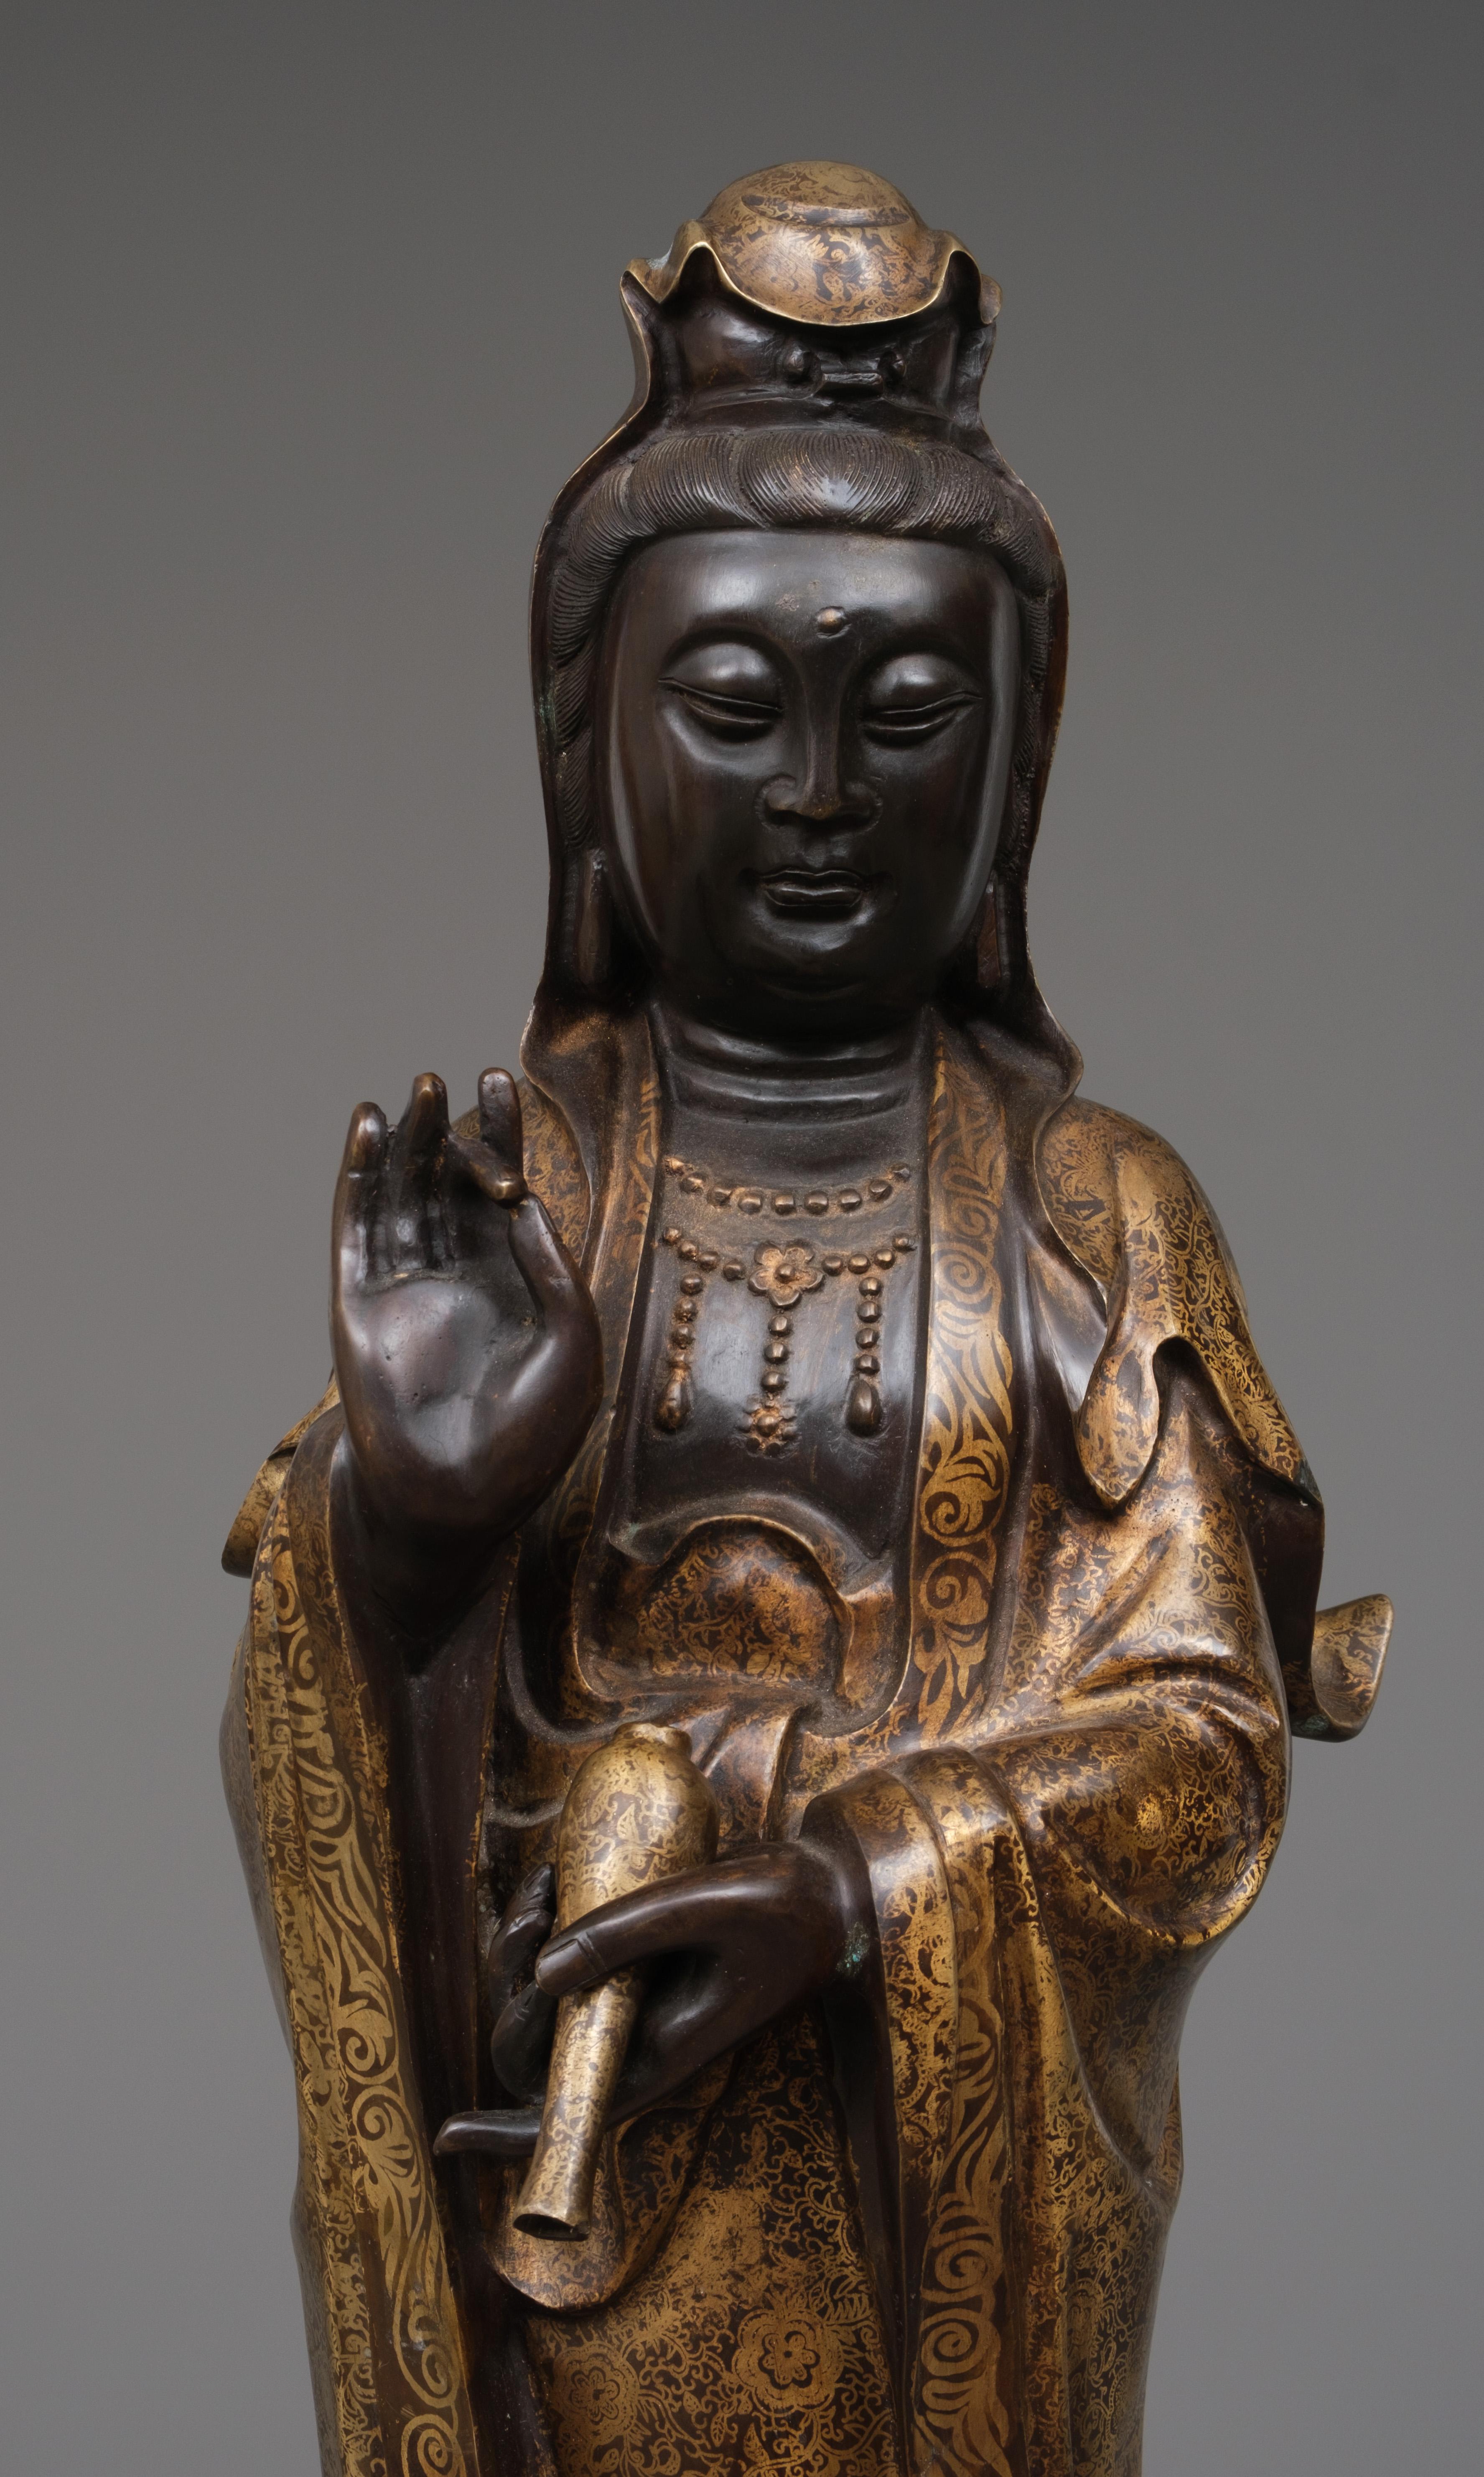 Impressionnante figurine en bronze de Chine représentant un bodhisattva debout, Guanyin, révérée comme la déesse de la miséricorde, également connue sous le nom d'Avalokiteshvara ou de Kannon. La figure est magistralement réalisée en une seule pièce